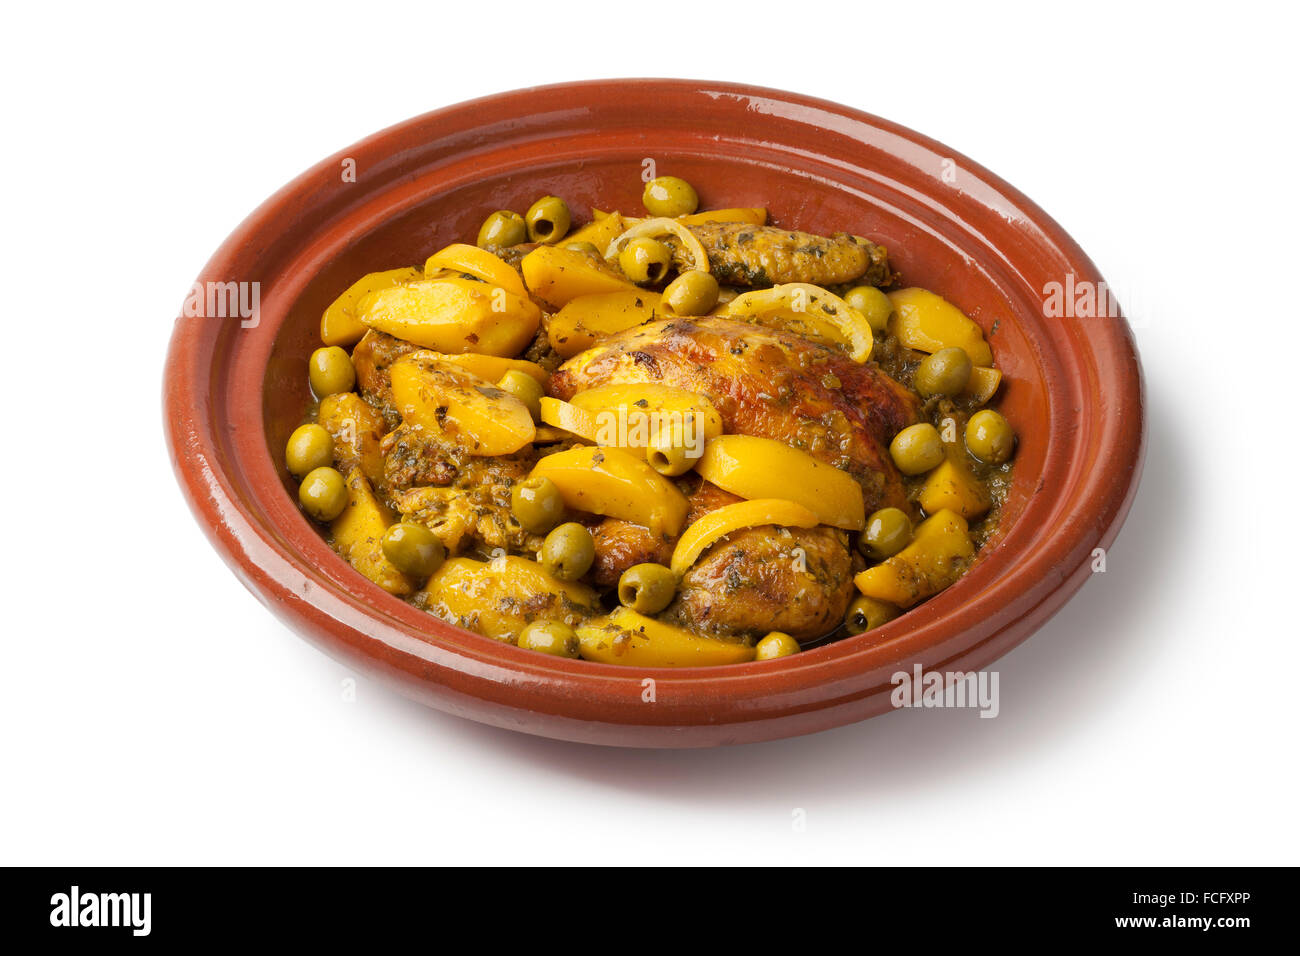 Tajine marocain traditionnel avec du poulet et des olives,pototoes sur fond blanc Banque D'Images